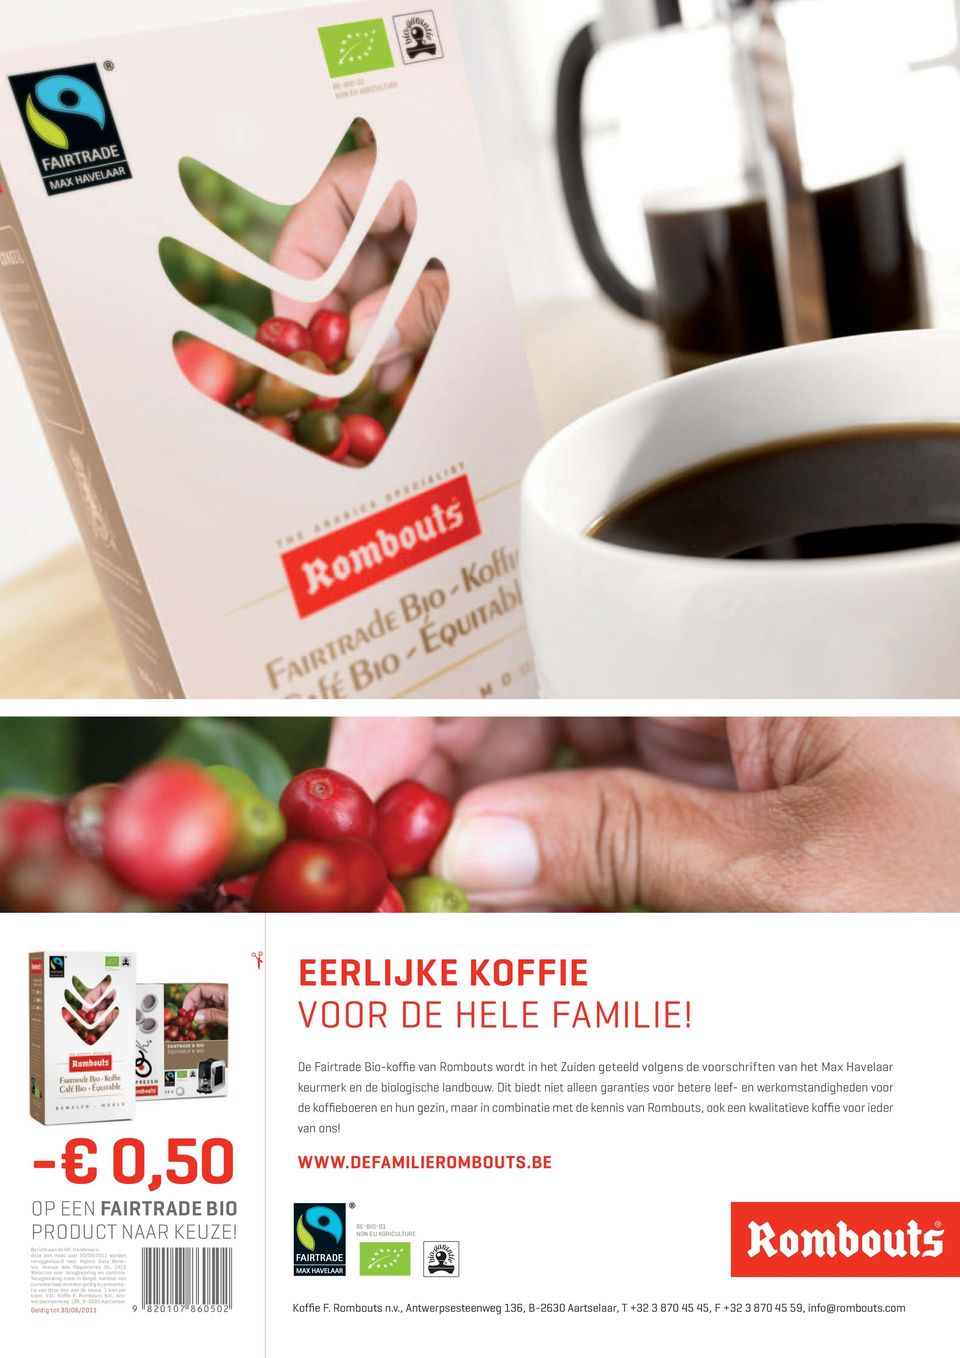 Dit biedt niet alleen garanties voor betere leef- en werkomstandigheden voor de koffieboeren en hun gezin, maar in combinatie met de kennis van Rombouts, ook een kwalitatieve koffie voor ieder van